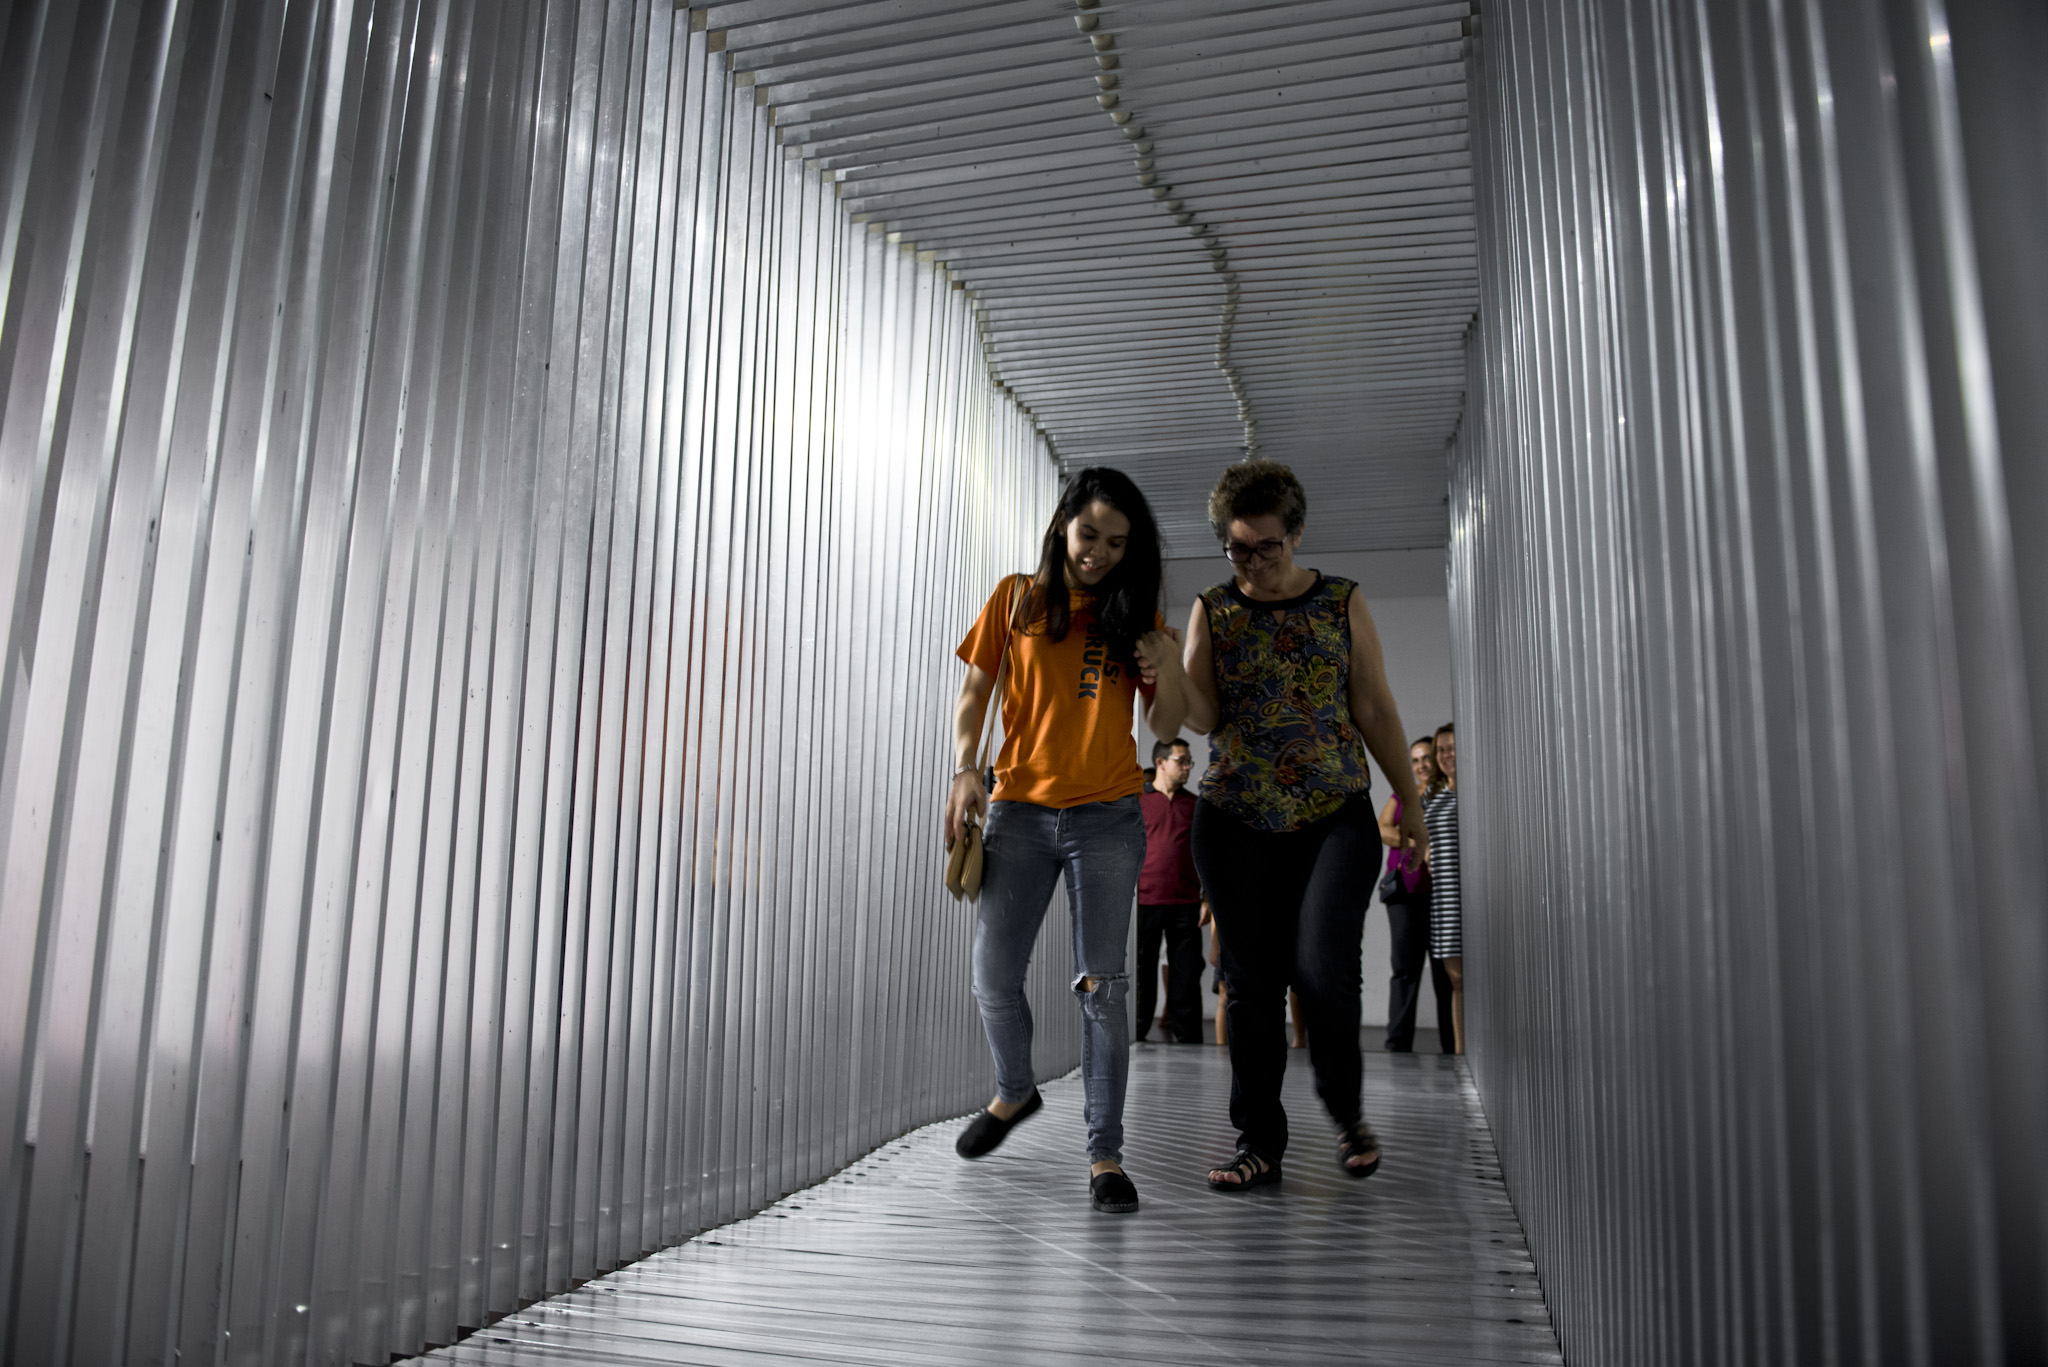    tunnel | túnel    @ cen. cul. vale maranhão 2017   + expo  